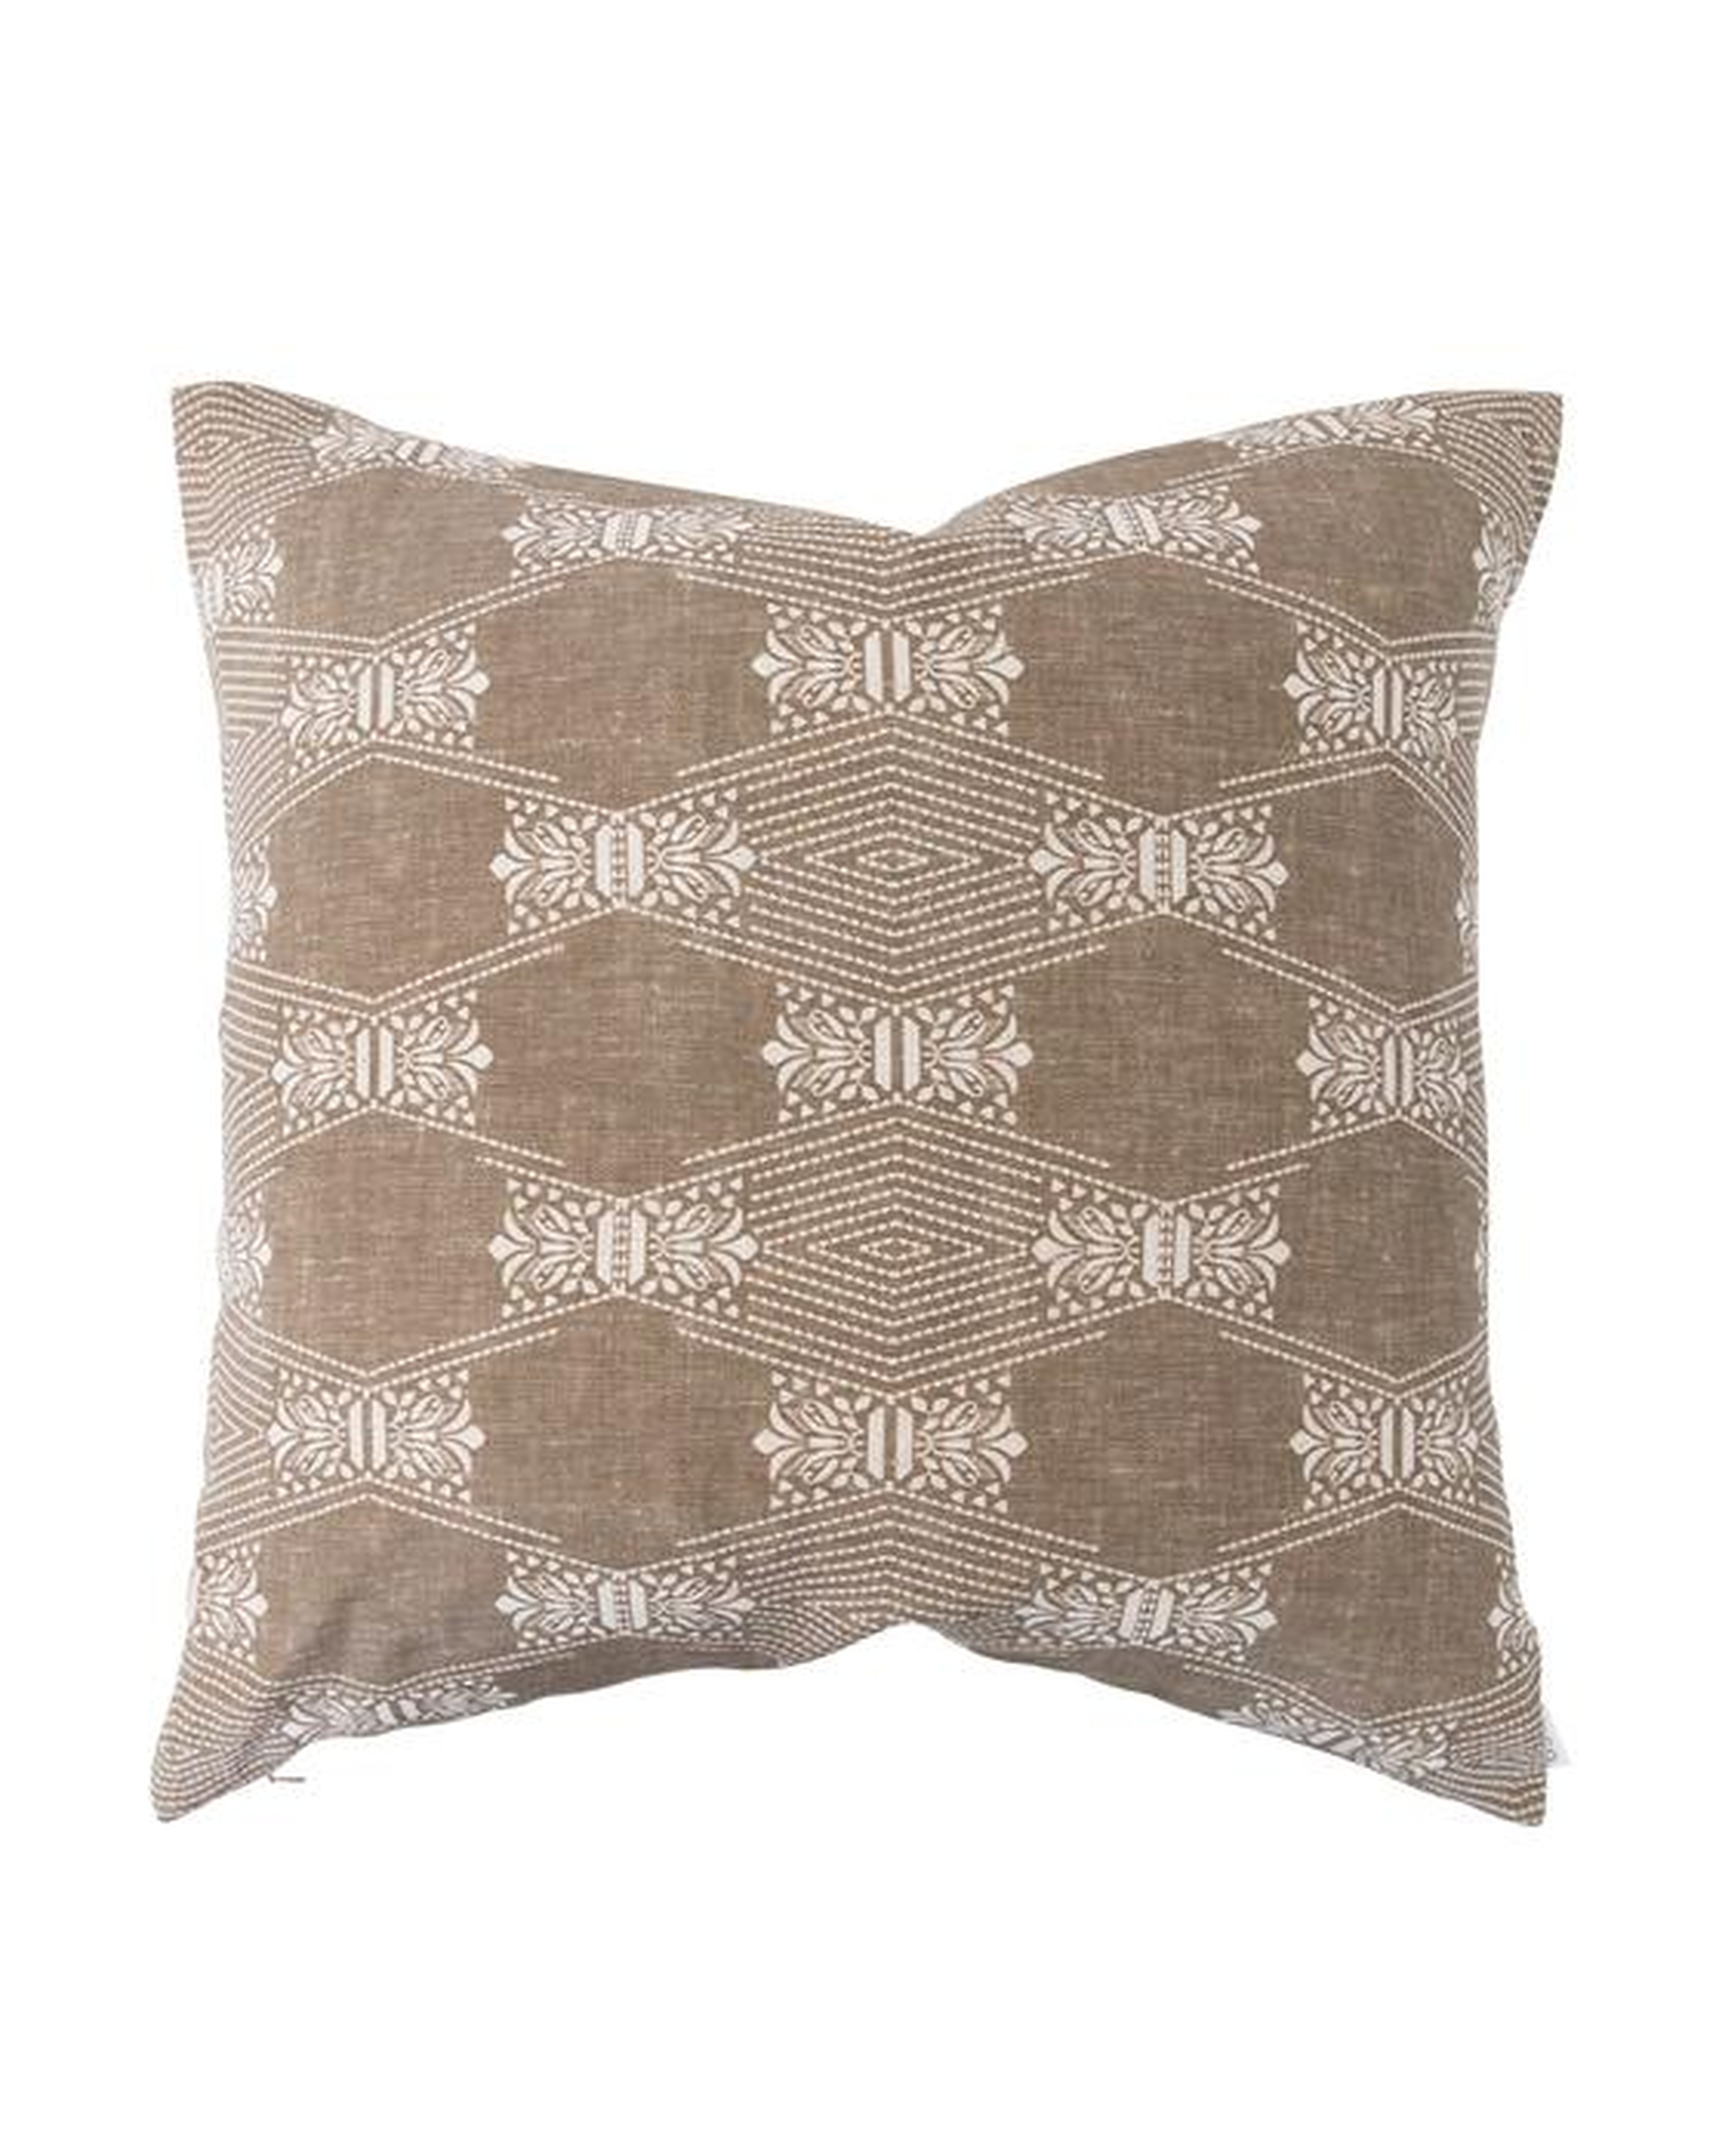 Saraya Pillow Cover, Light Brown, 22" x 22" - McGee & Co.